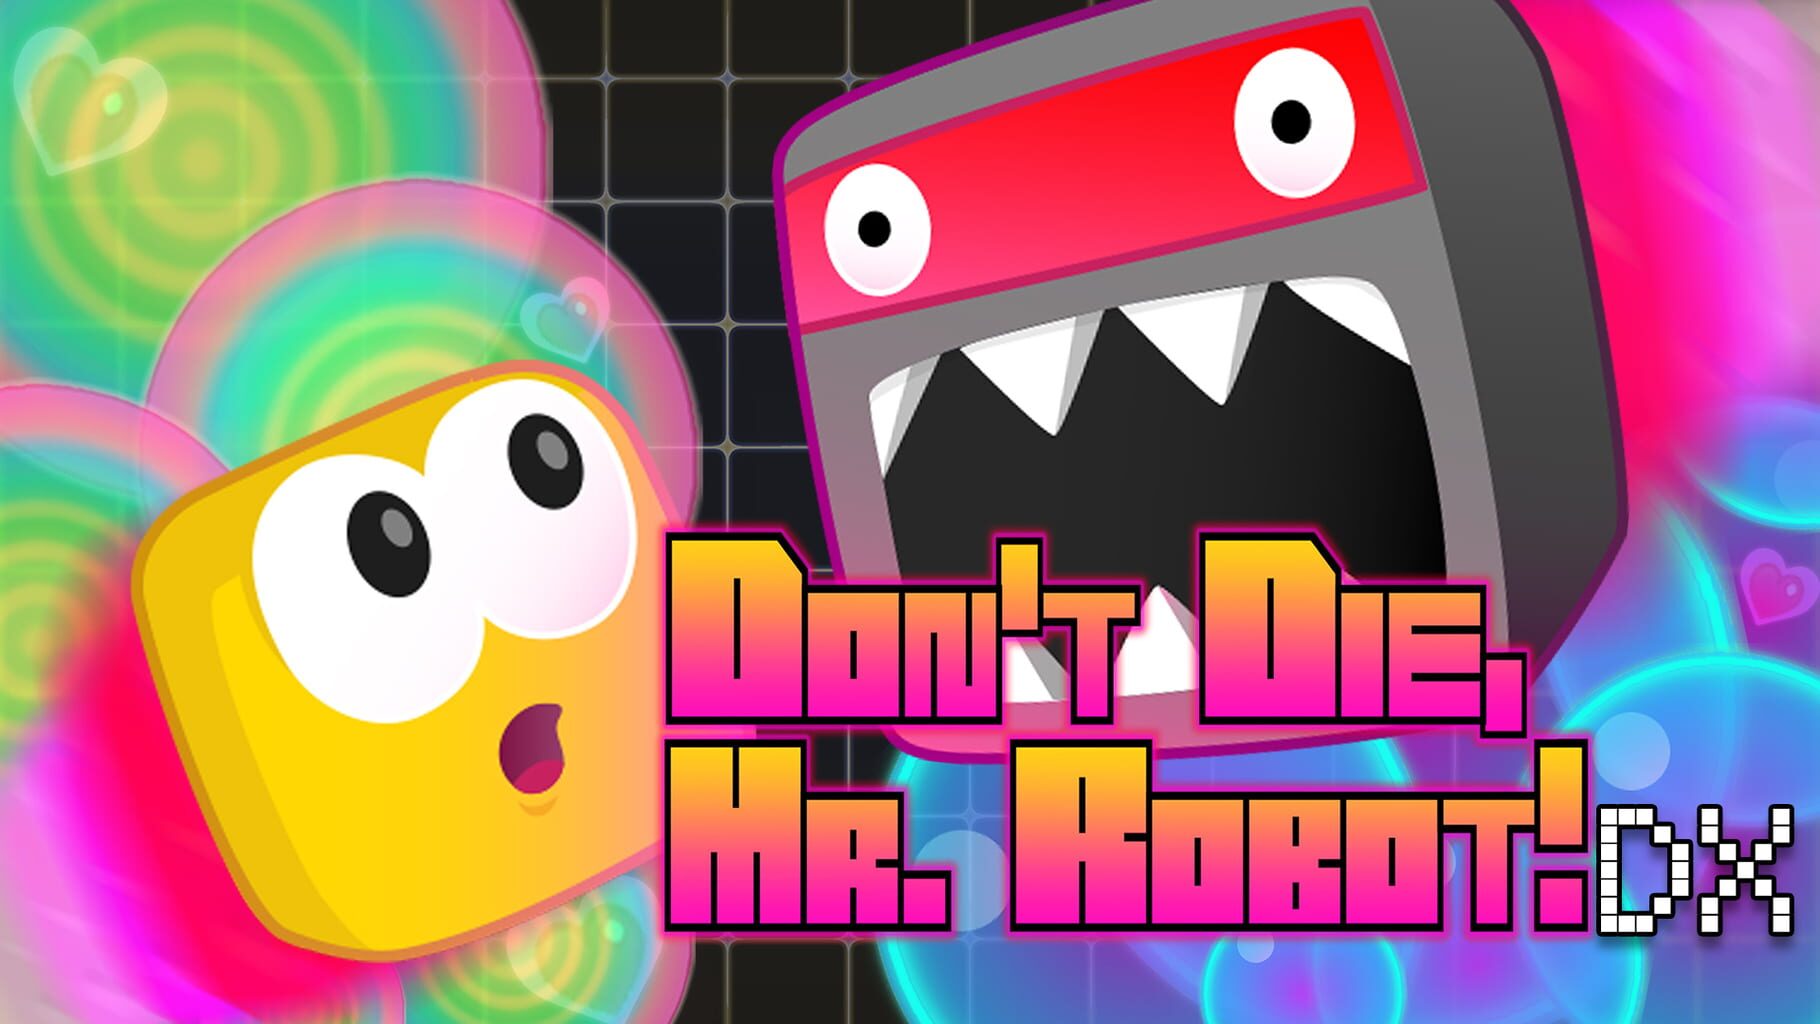 Don't Die, Mr. Robot! artwork